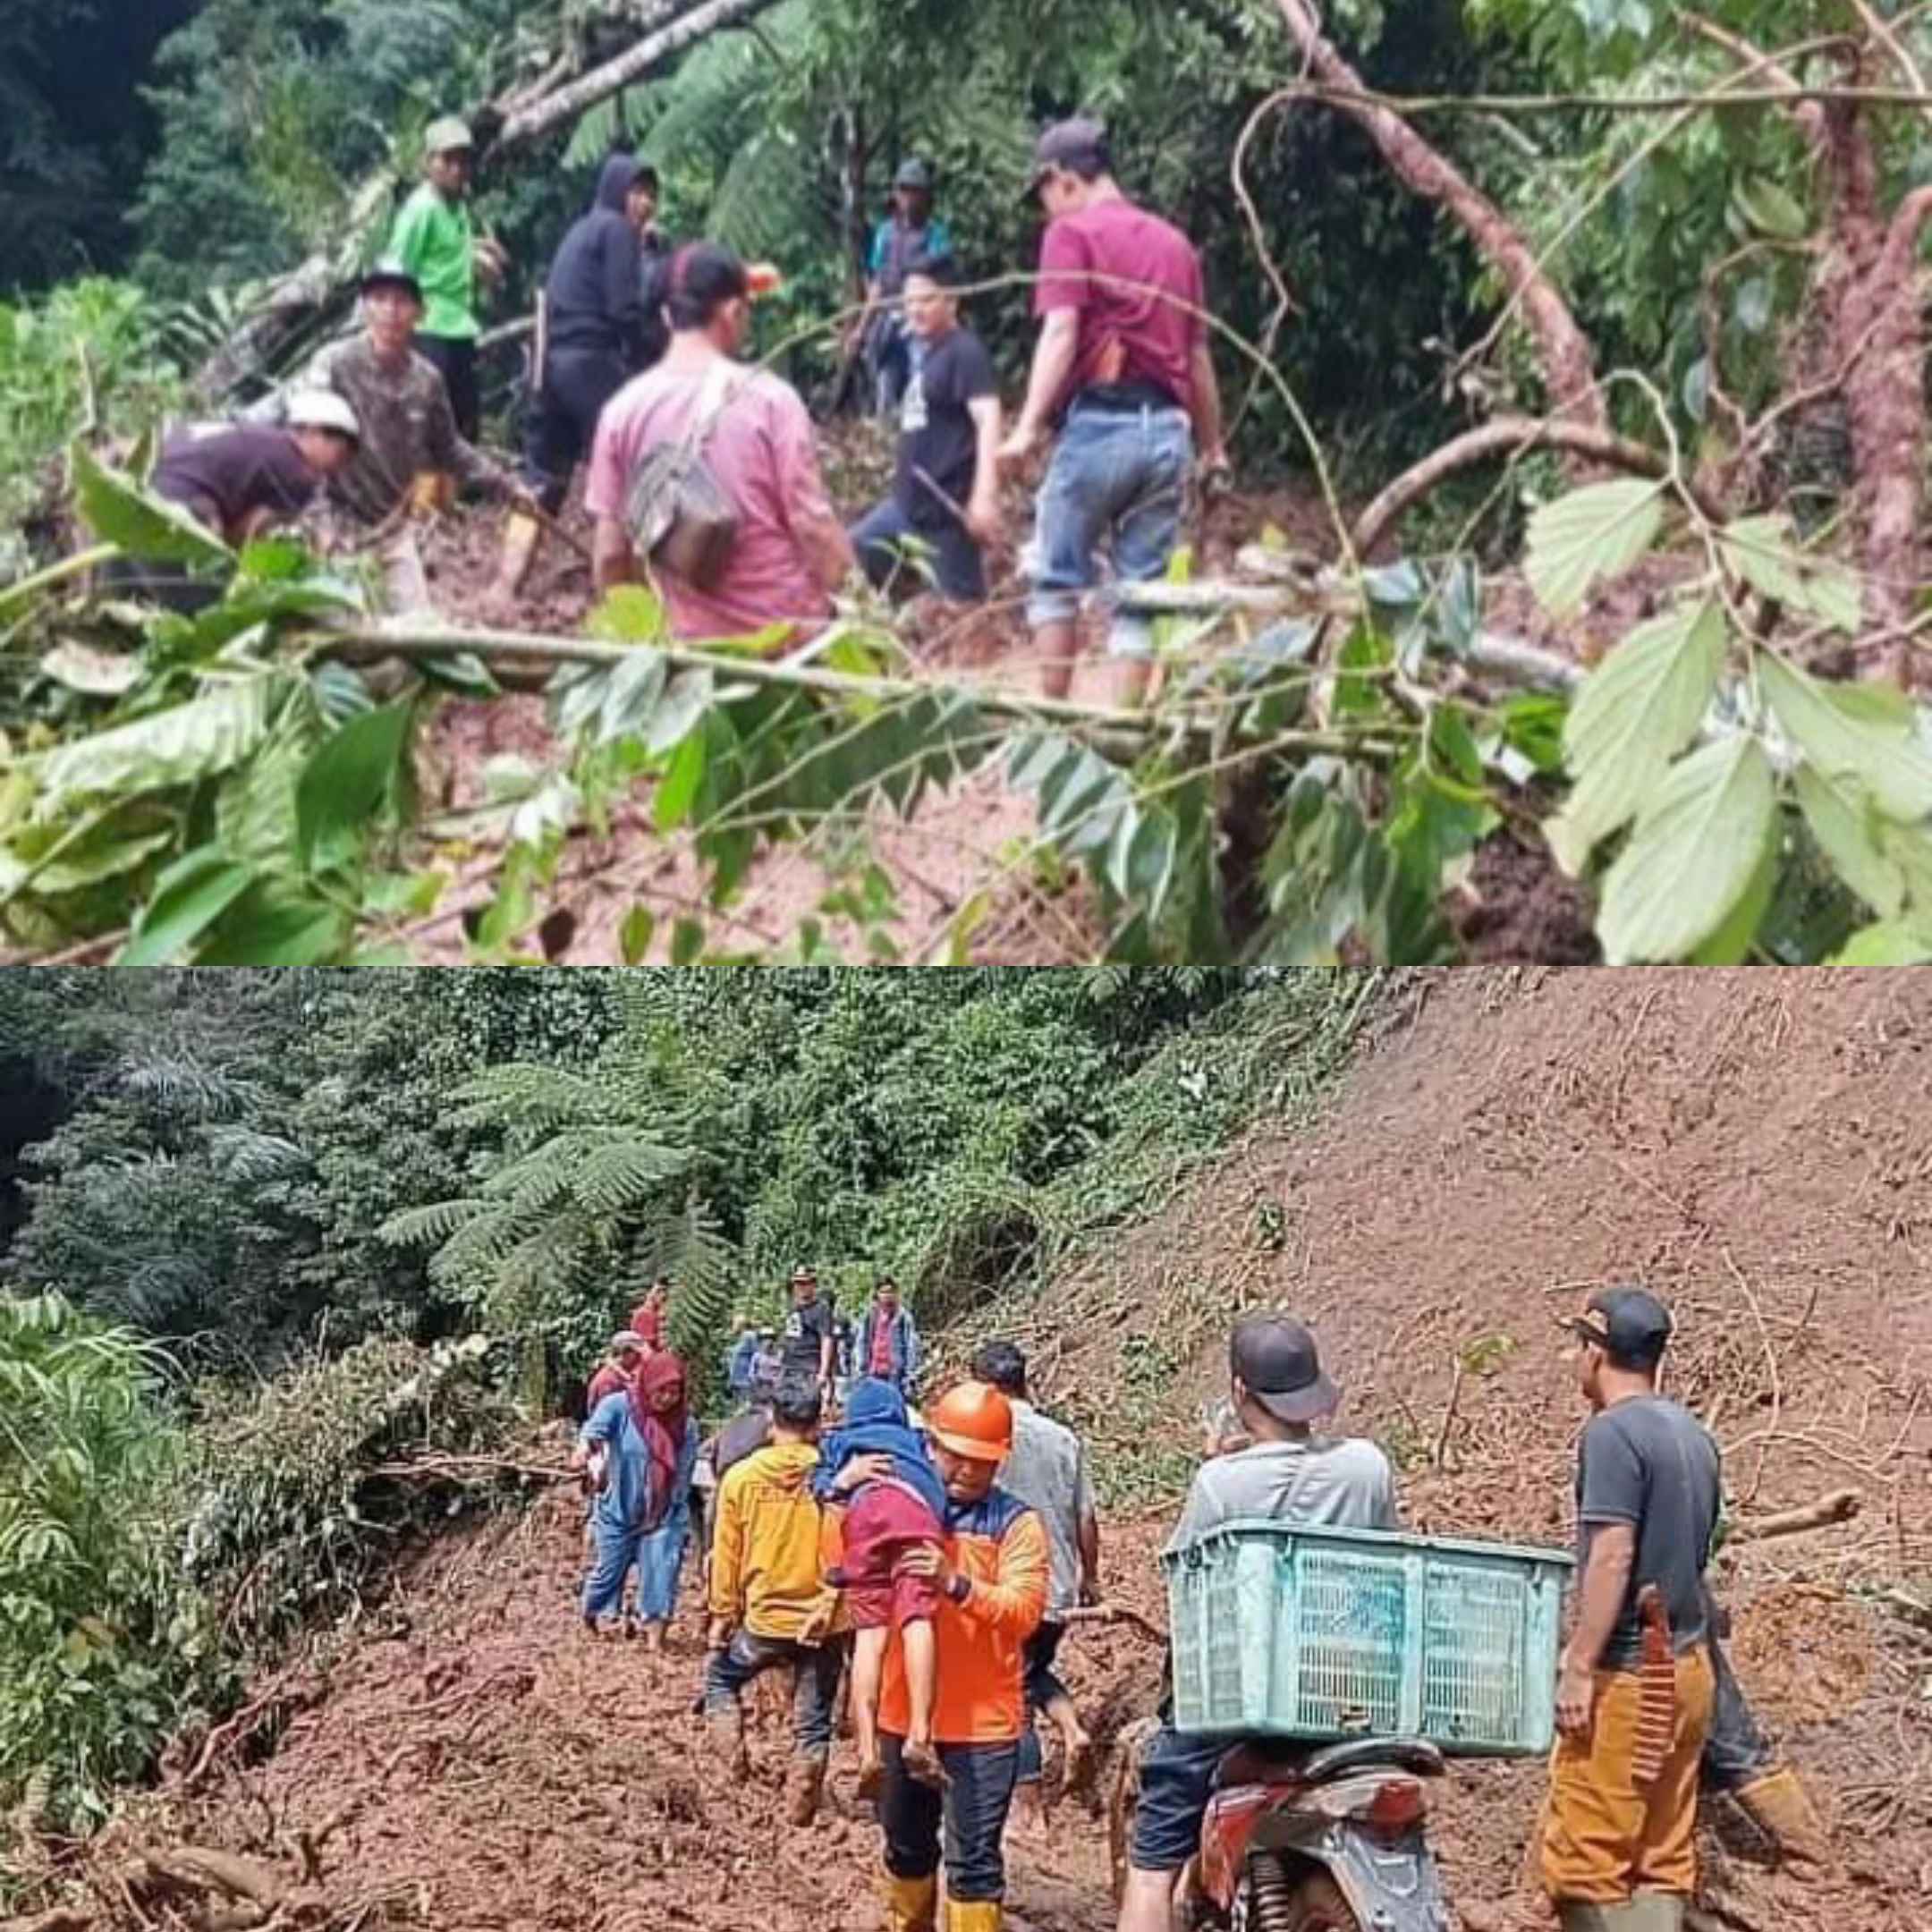 Hati-Hati Bencana Tanah Longsor di Kecamatan Pulau Beringin, Masyarakat OKU Selatan Wajib Waspada